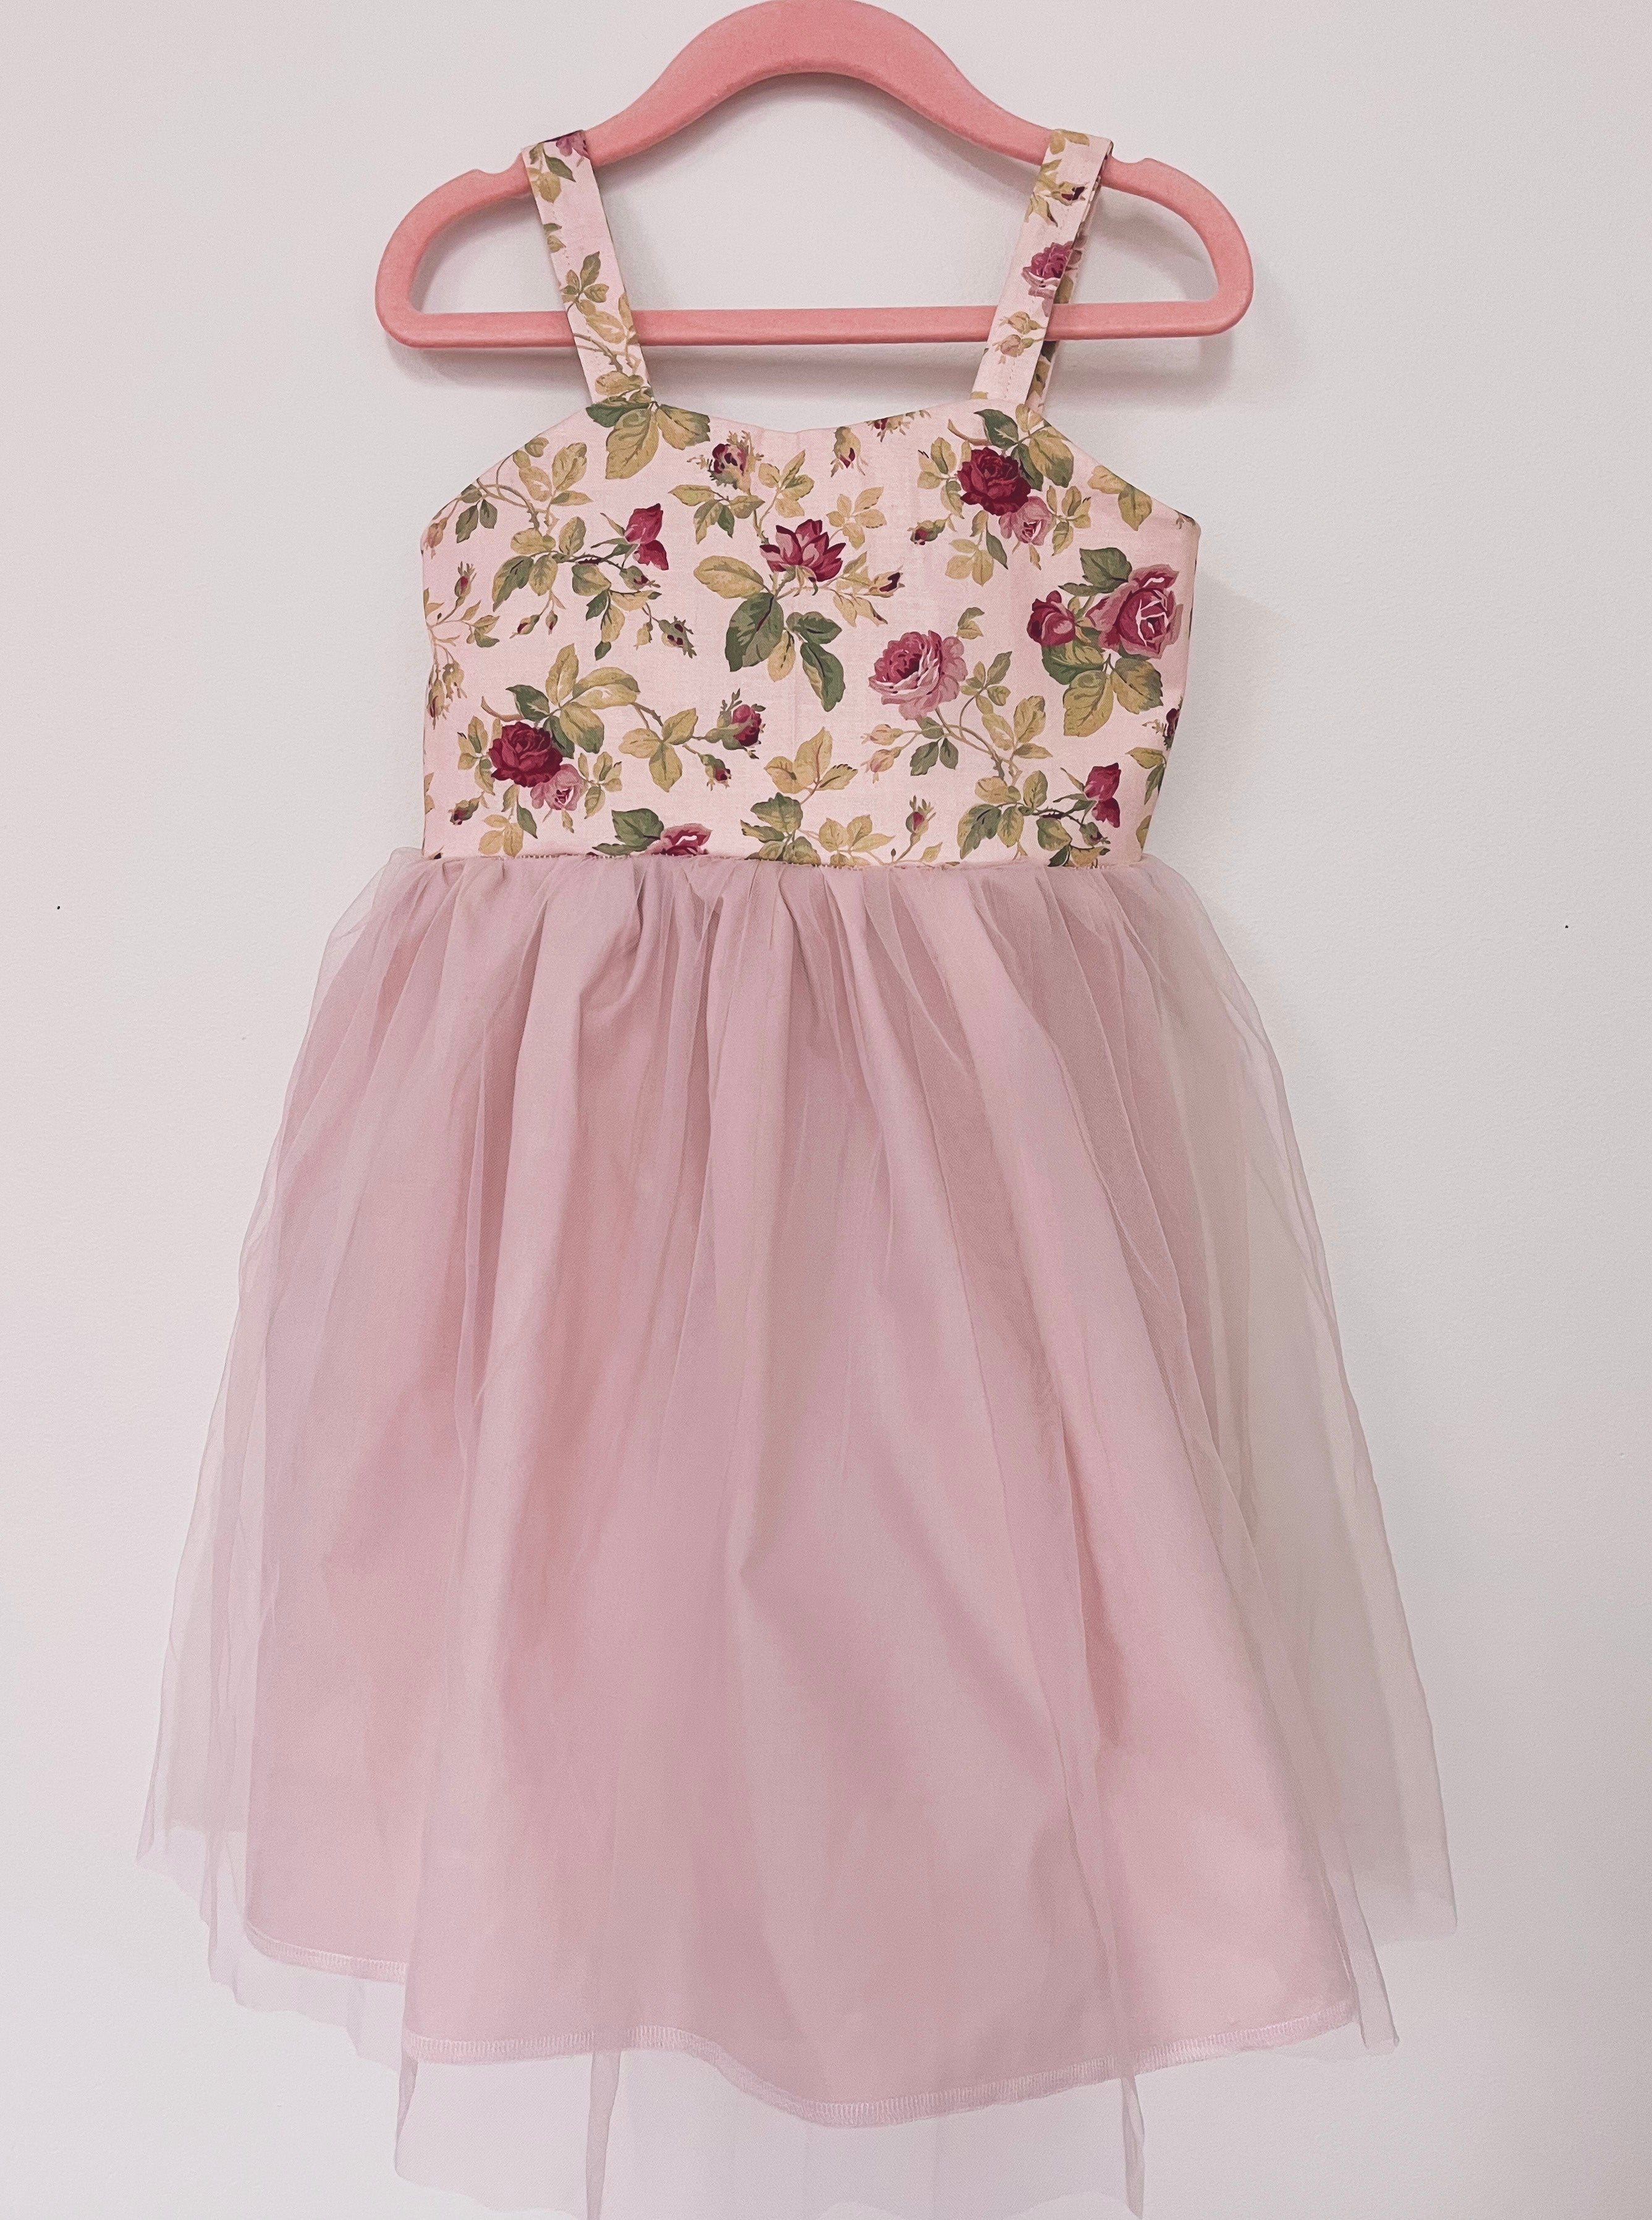 Vintage Rose Dress